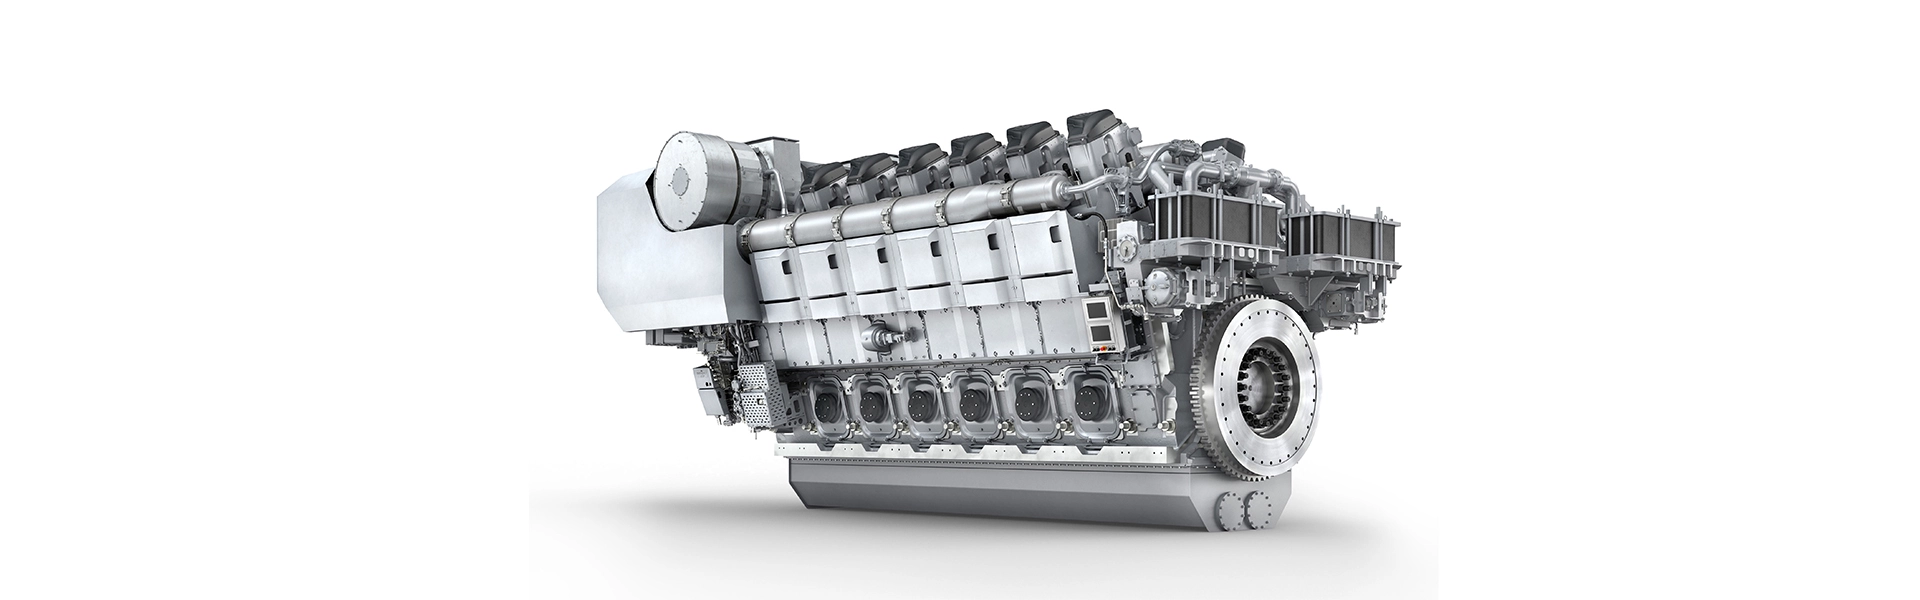 Industrial Fasteners Applicated in Diesel Engine